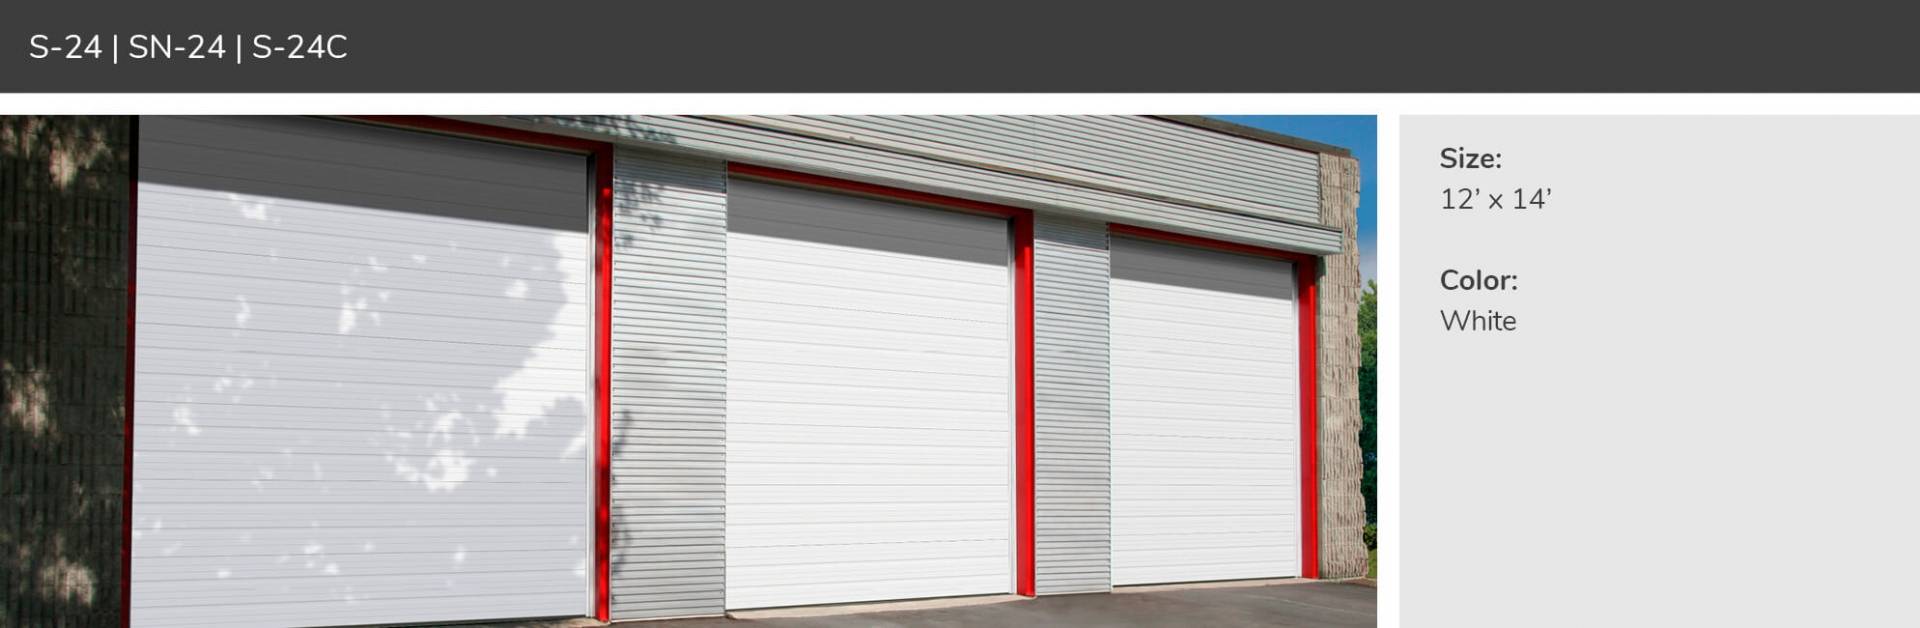 S24, SN24 and S24C Commercial Garage Door Manufacturer Garaga